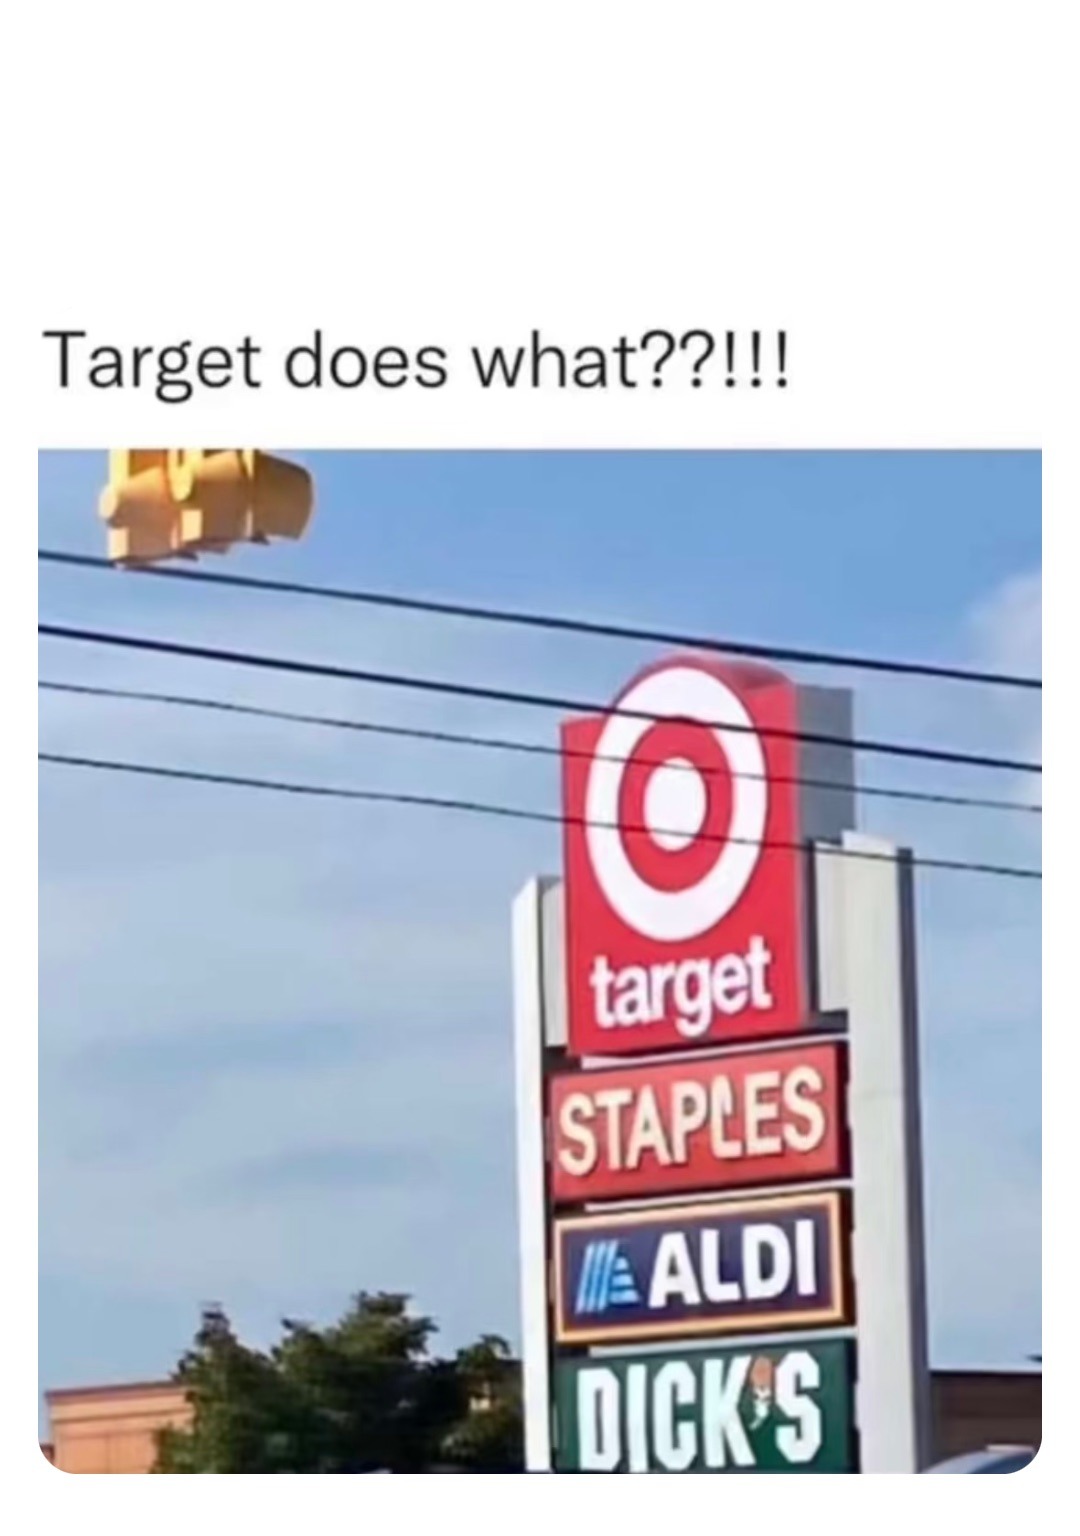 target staples all the dicks - meme